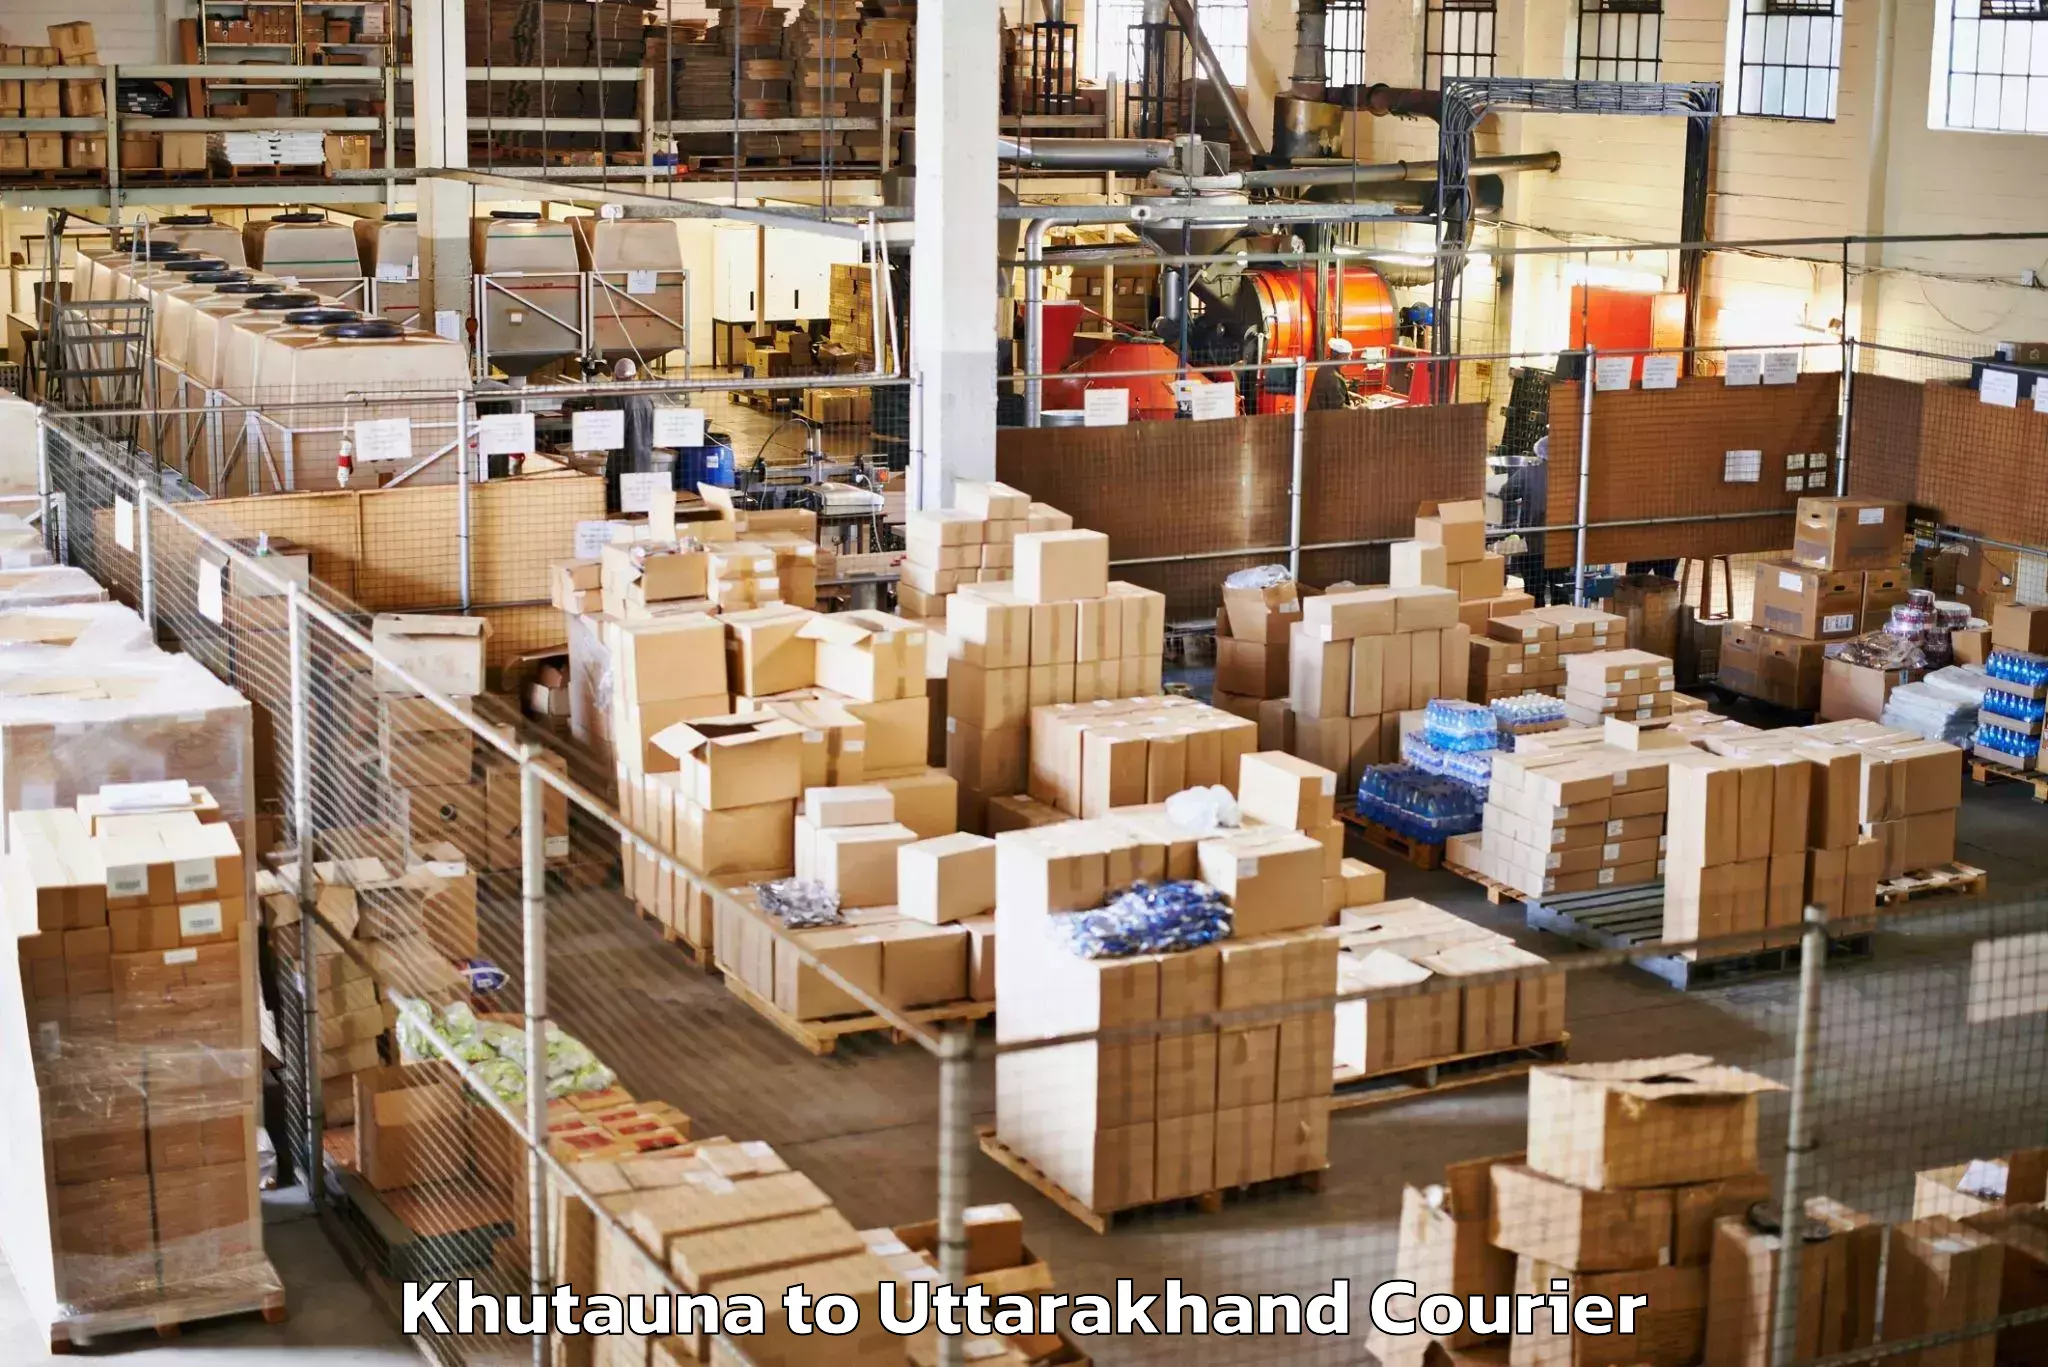 Luggage shipment processing Khutauna to Paithani